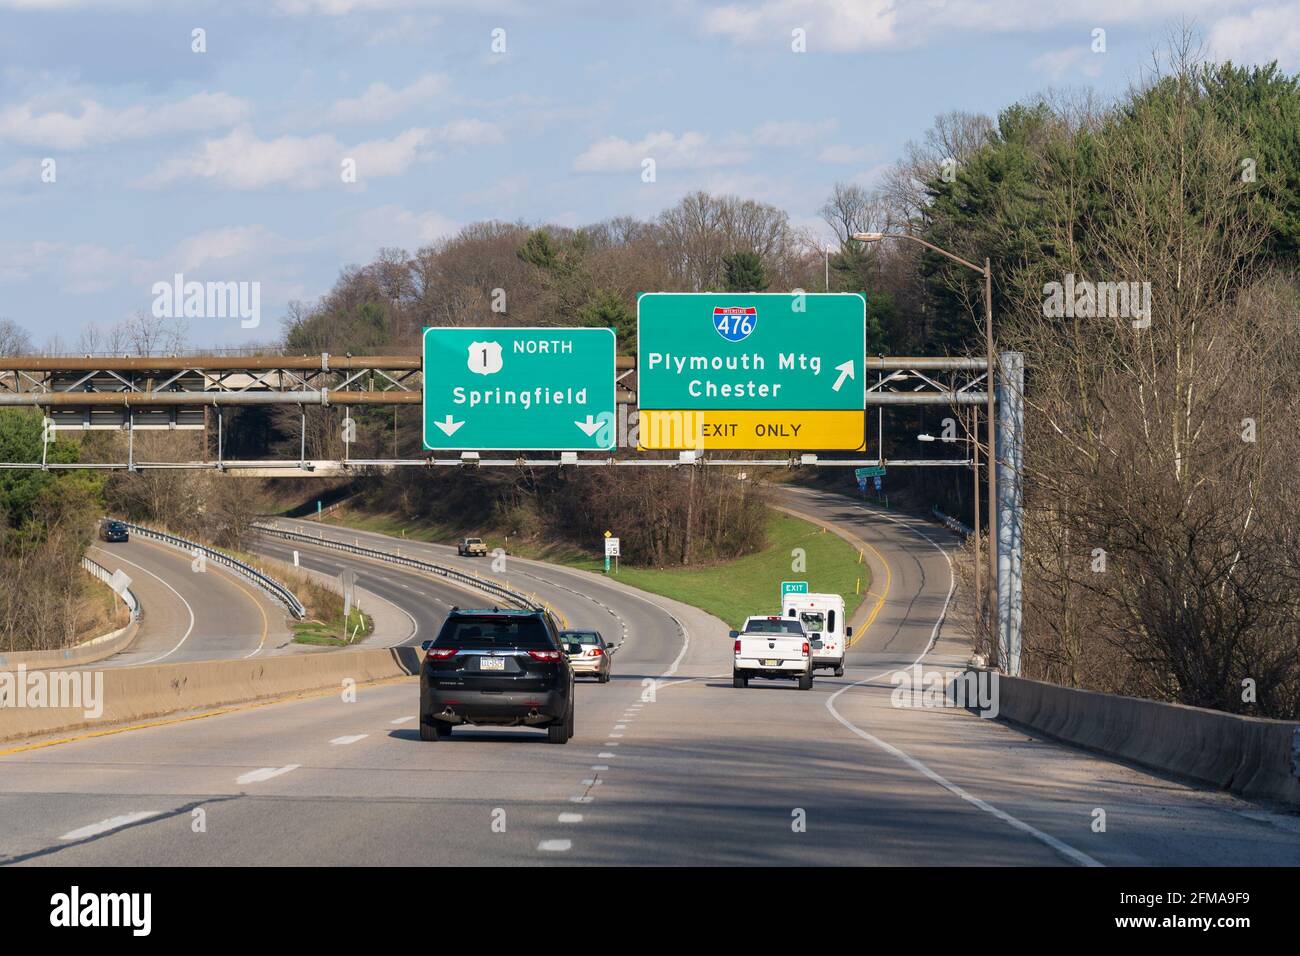 Media, PA - 4 avril 2021 : panneaux de sortie pour la route 476 Plymouth Meeting et Chester de la route 1 en Pennsylvanie, en direction de Springfield. La route 1 est al Banque D'Images